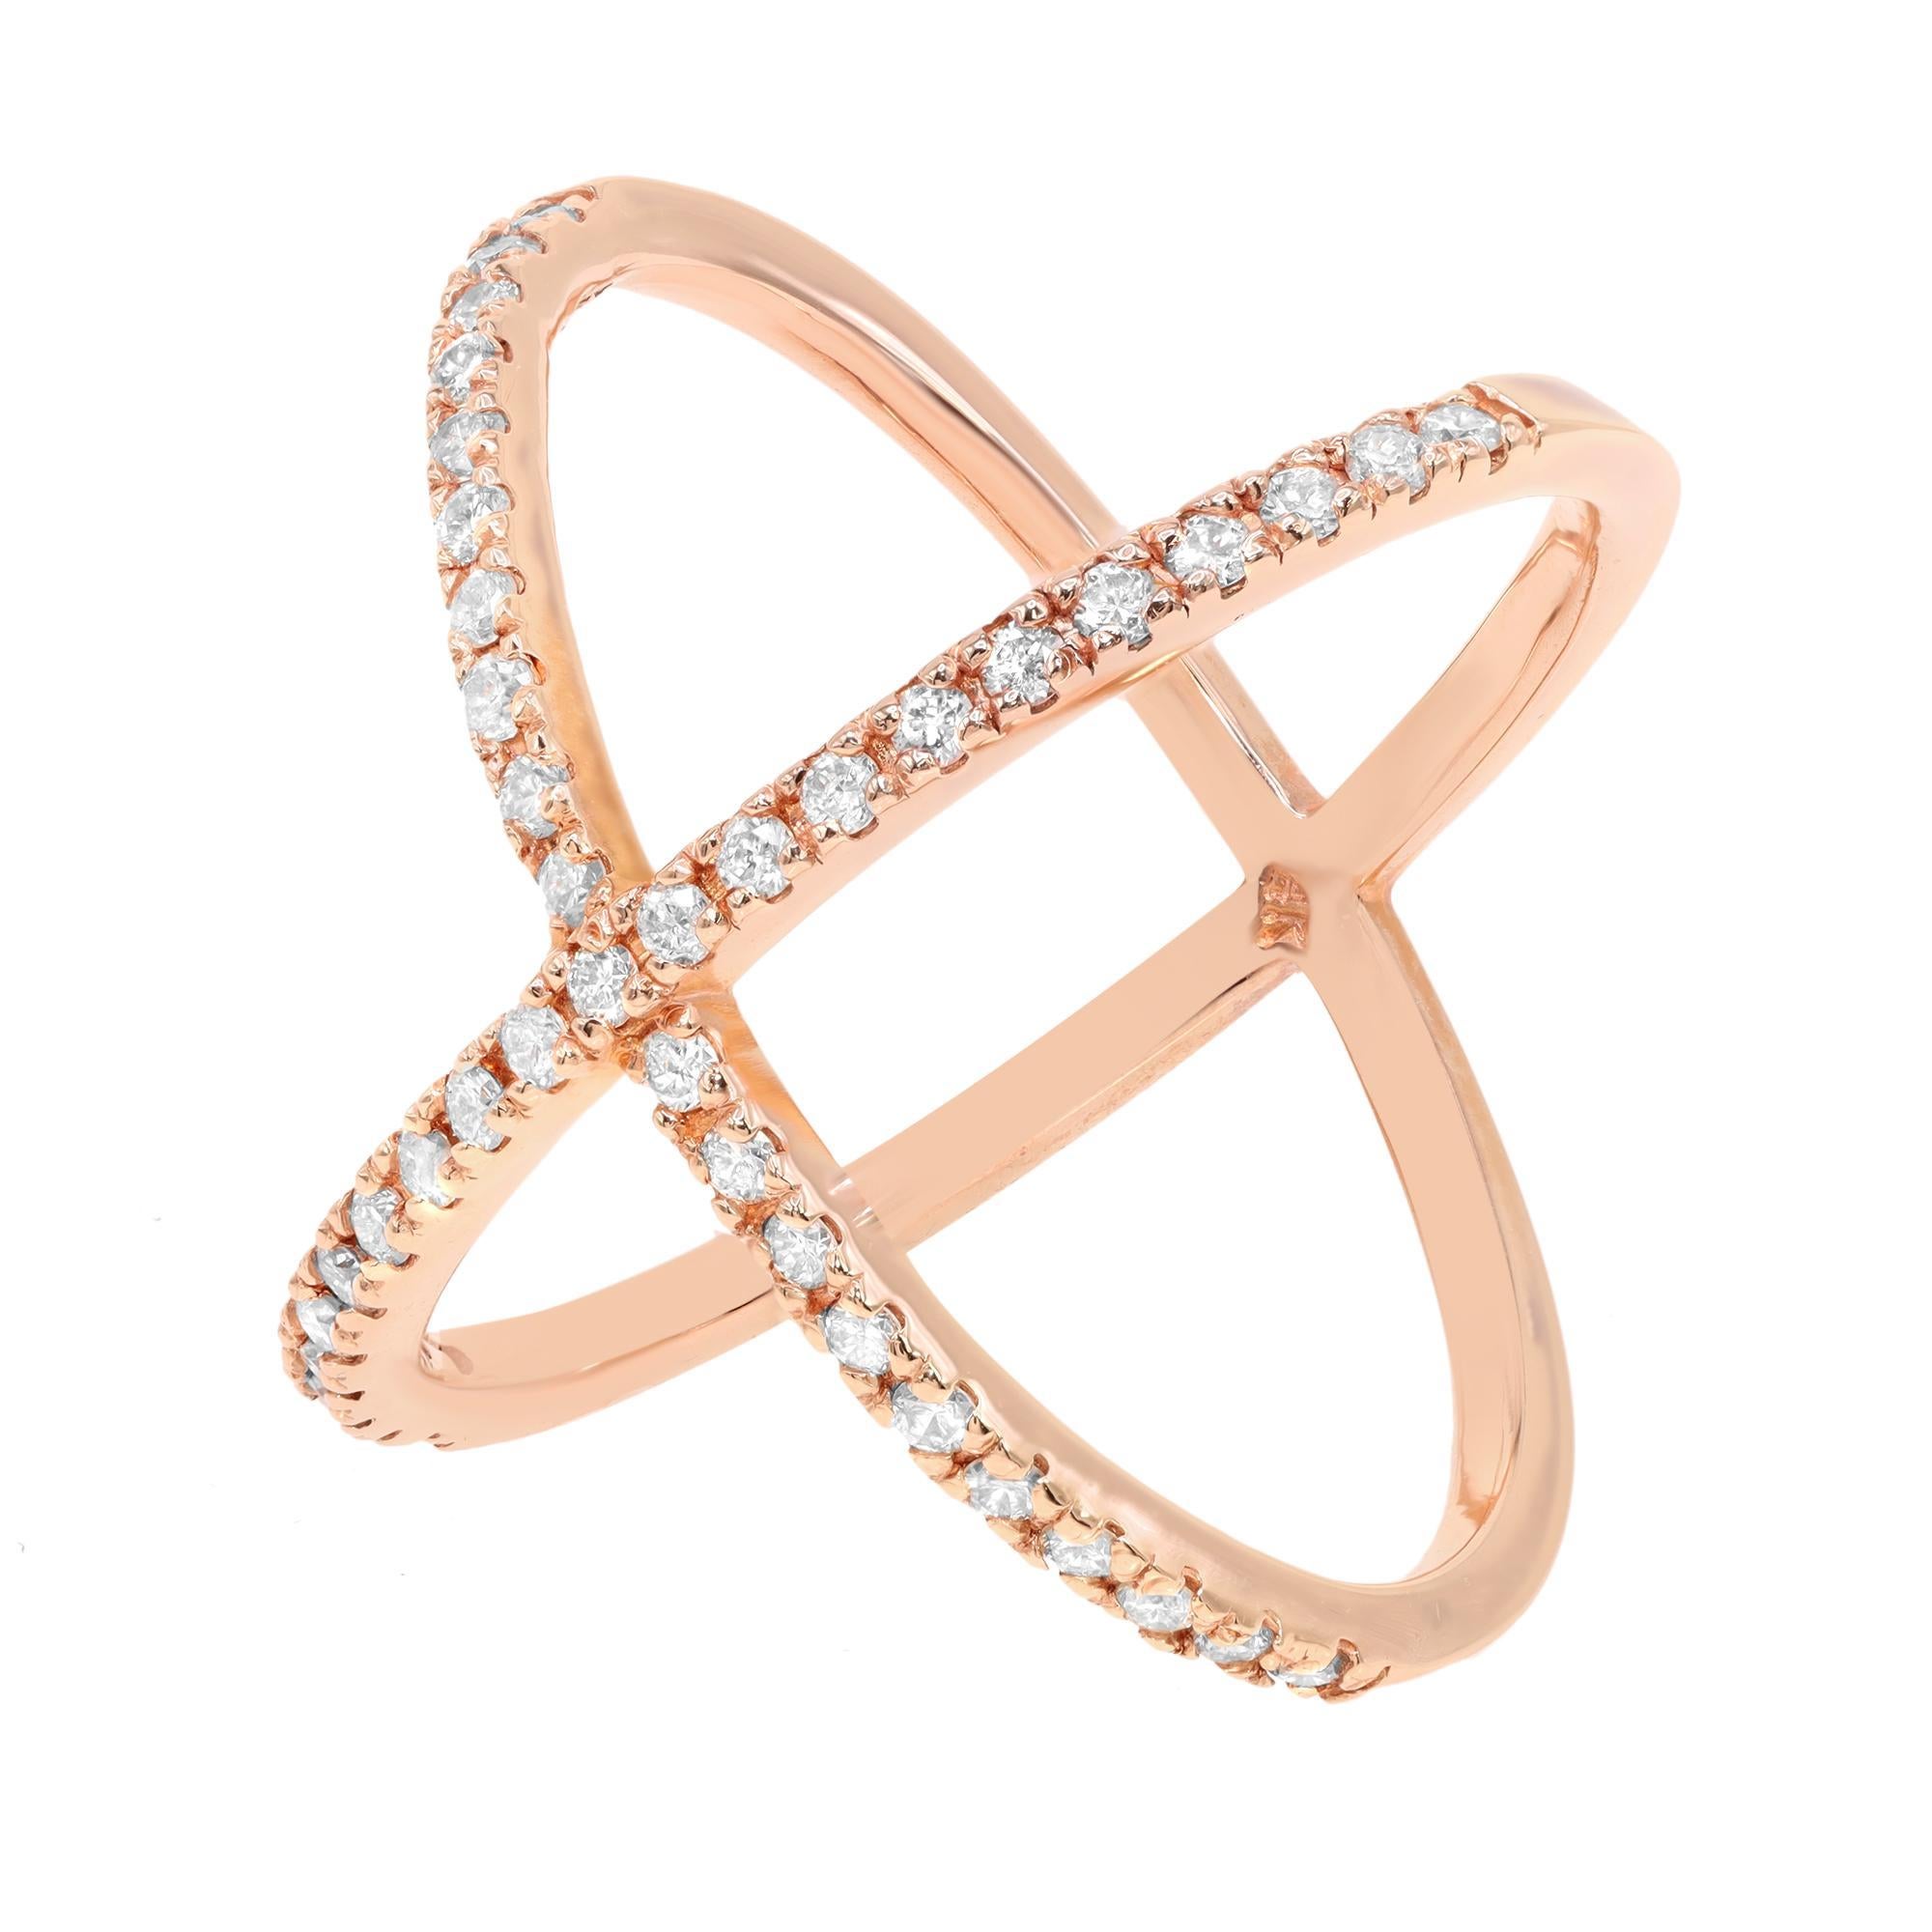 Modern Rachel Koen Natural Diamond X Ring 14K Rose Gold 0.56cttw For Sale